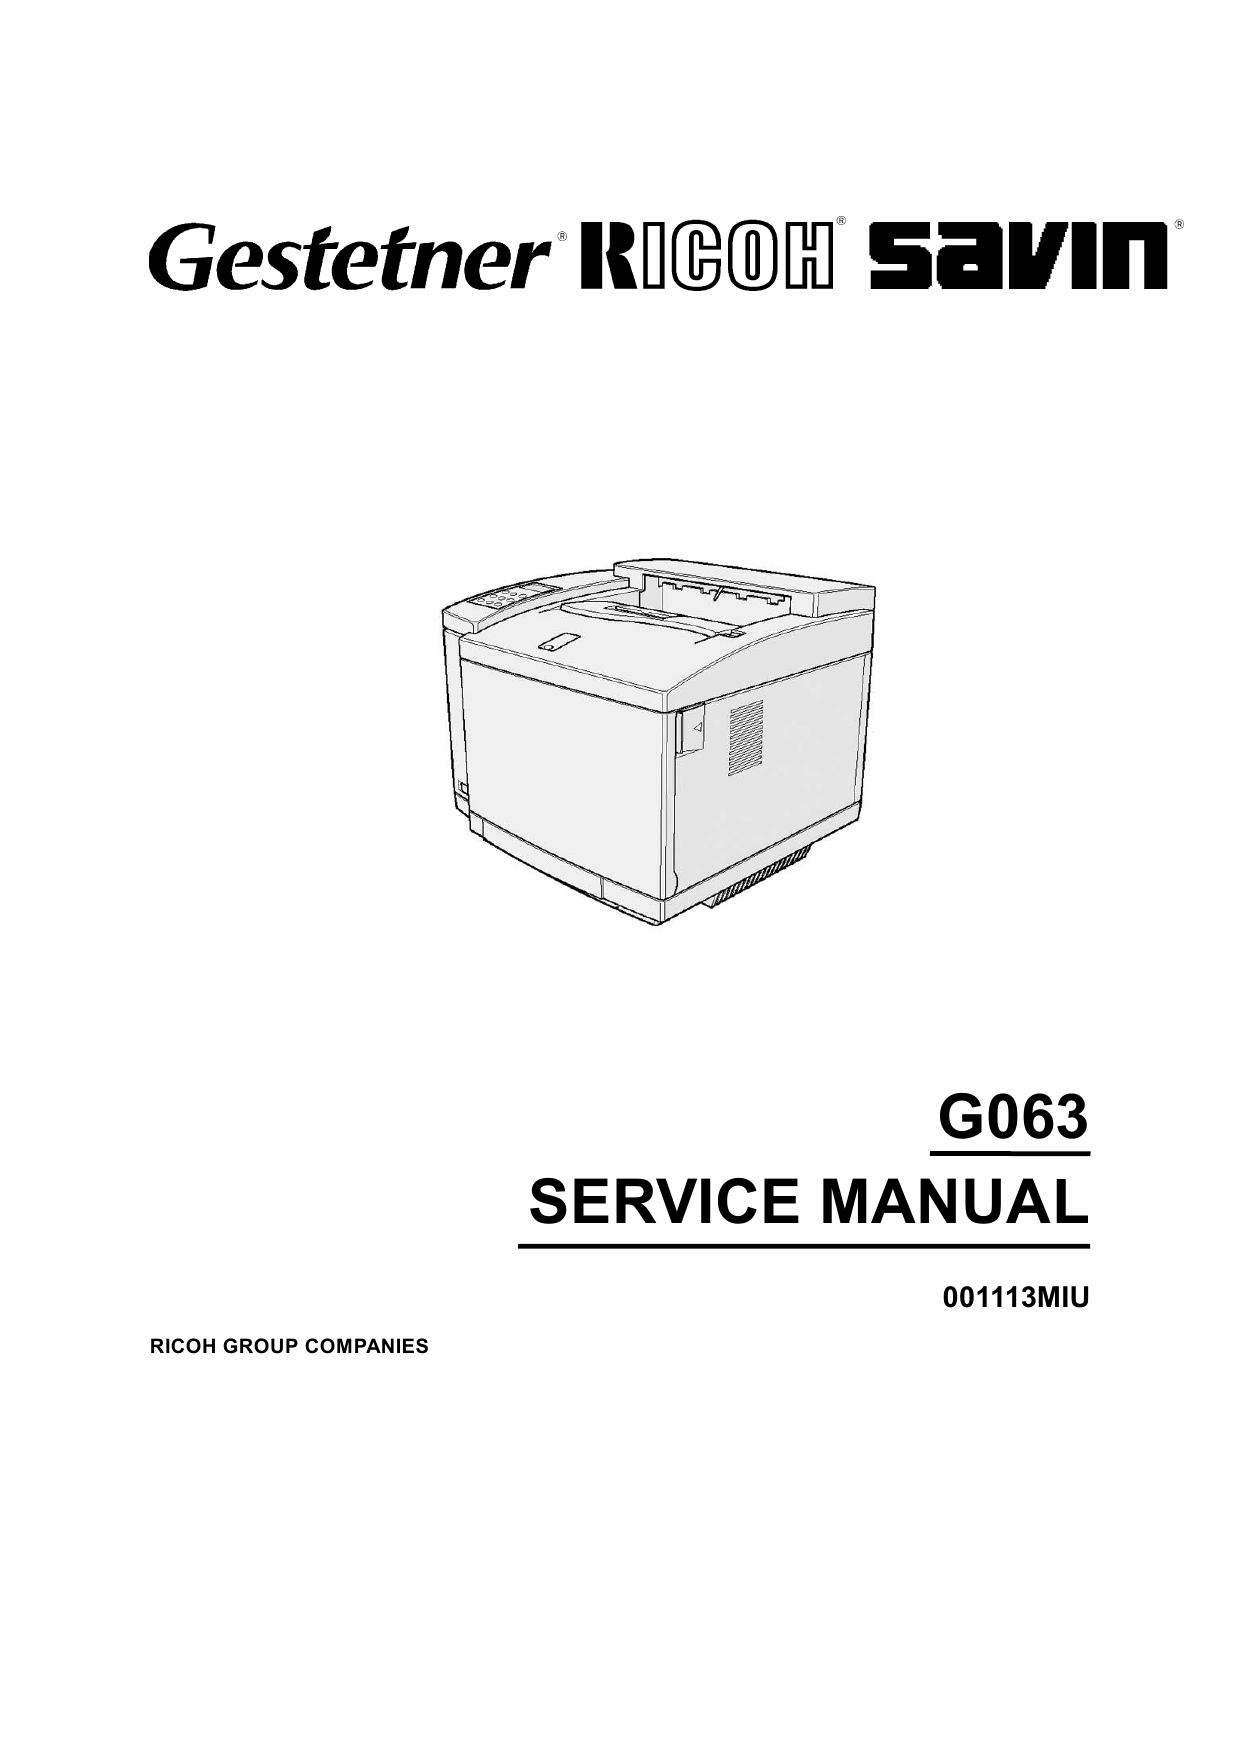 RICOH Aficio AP-206 G063 Parts Service Manual-1